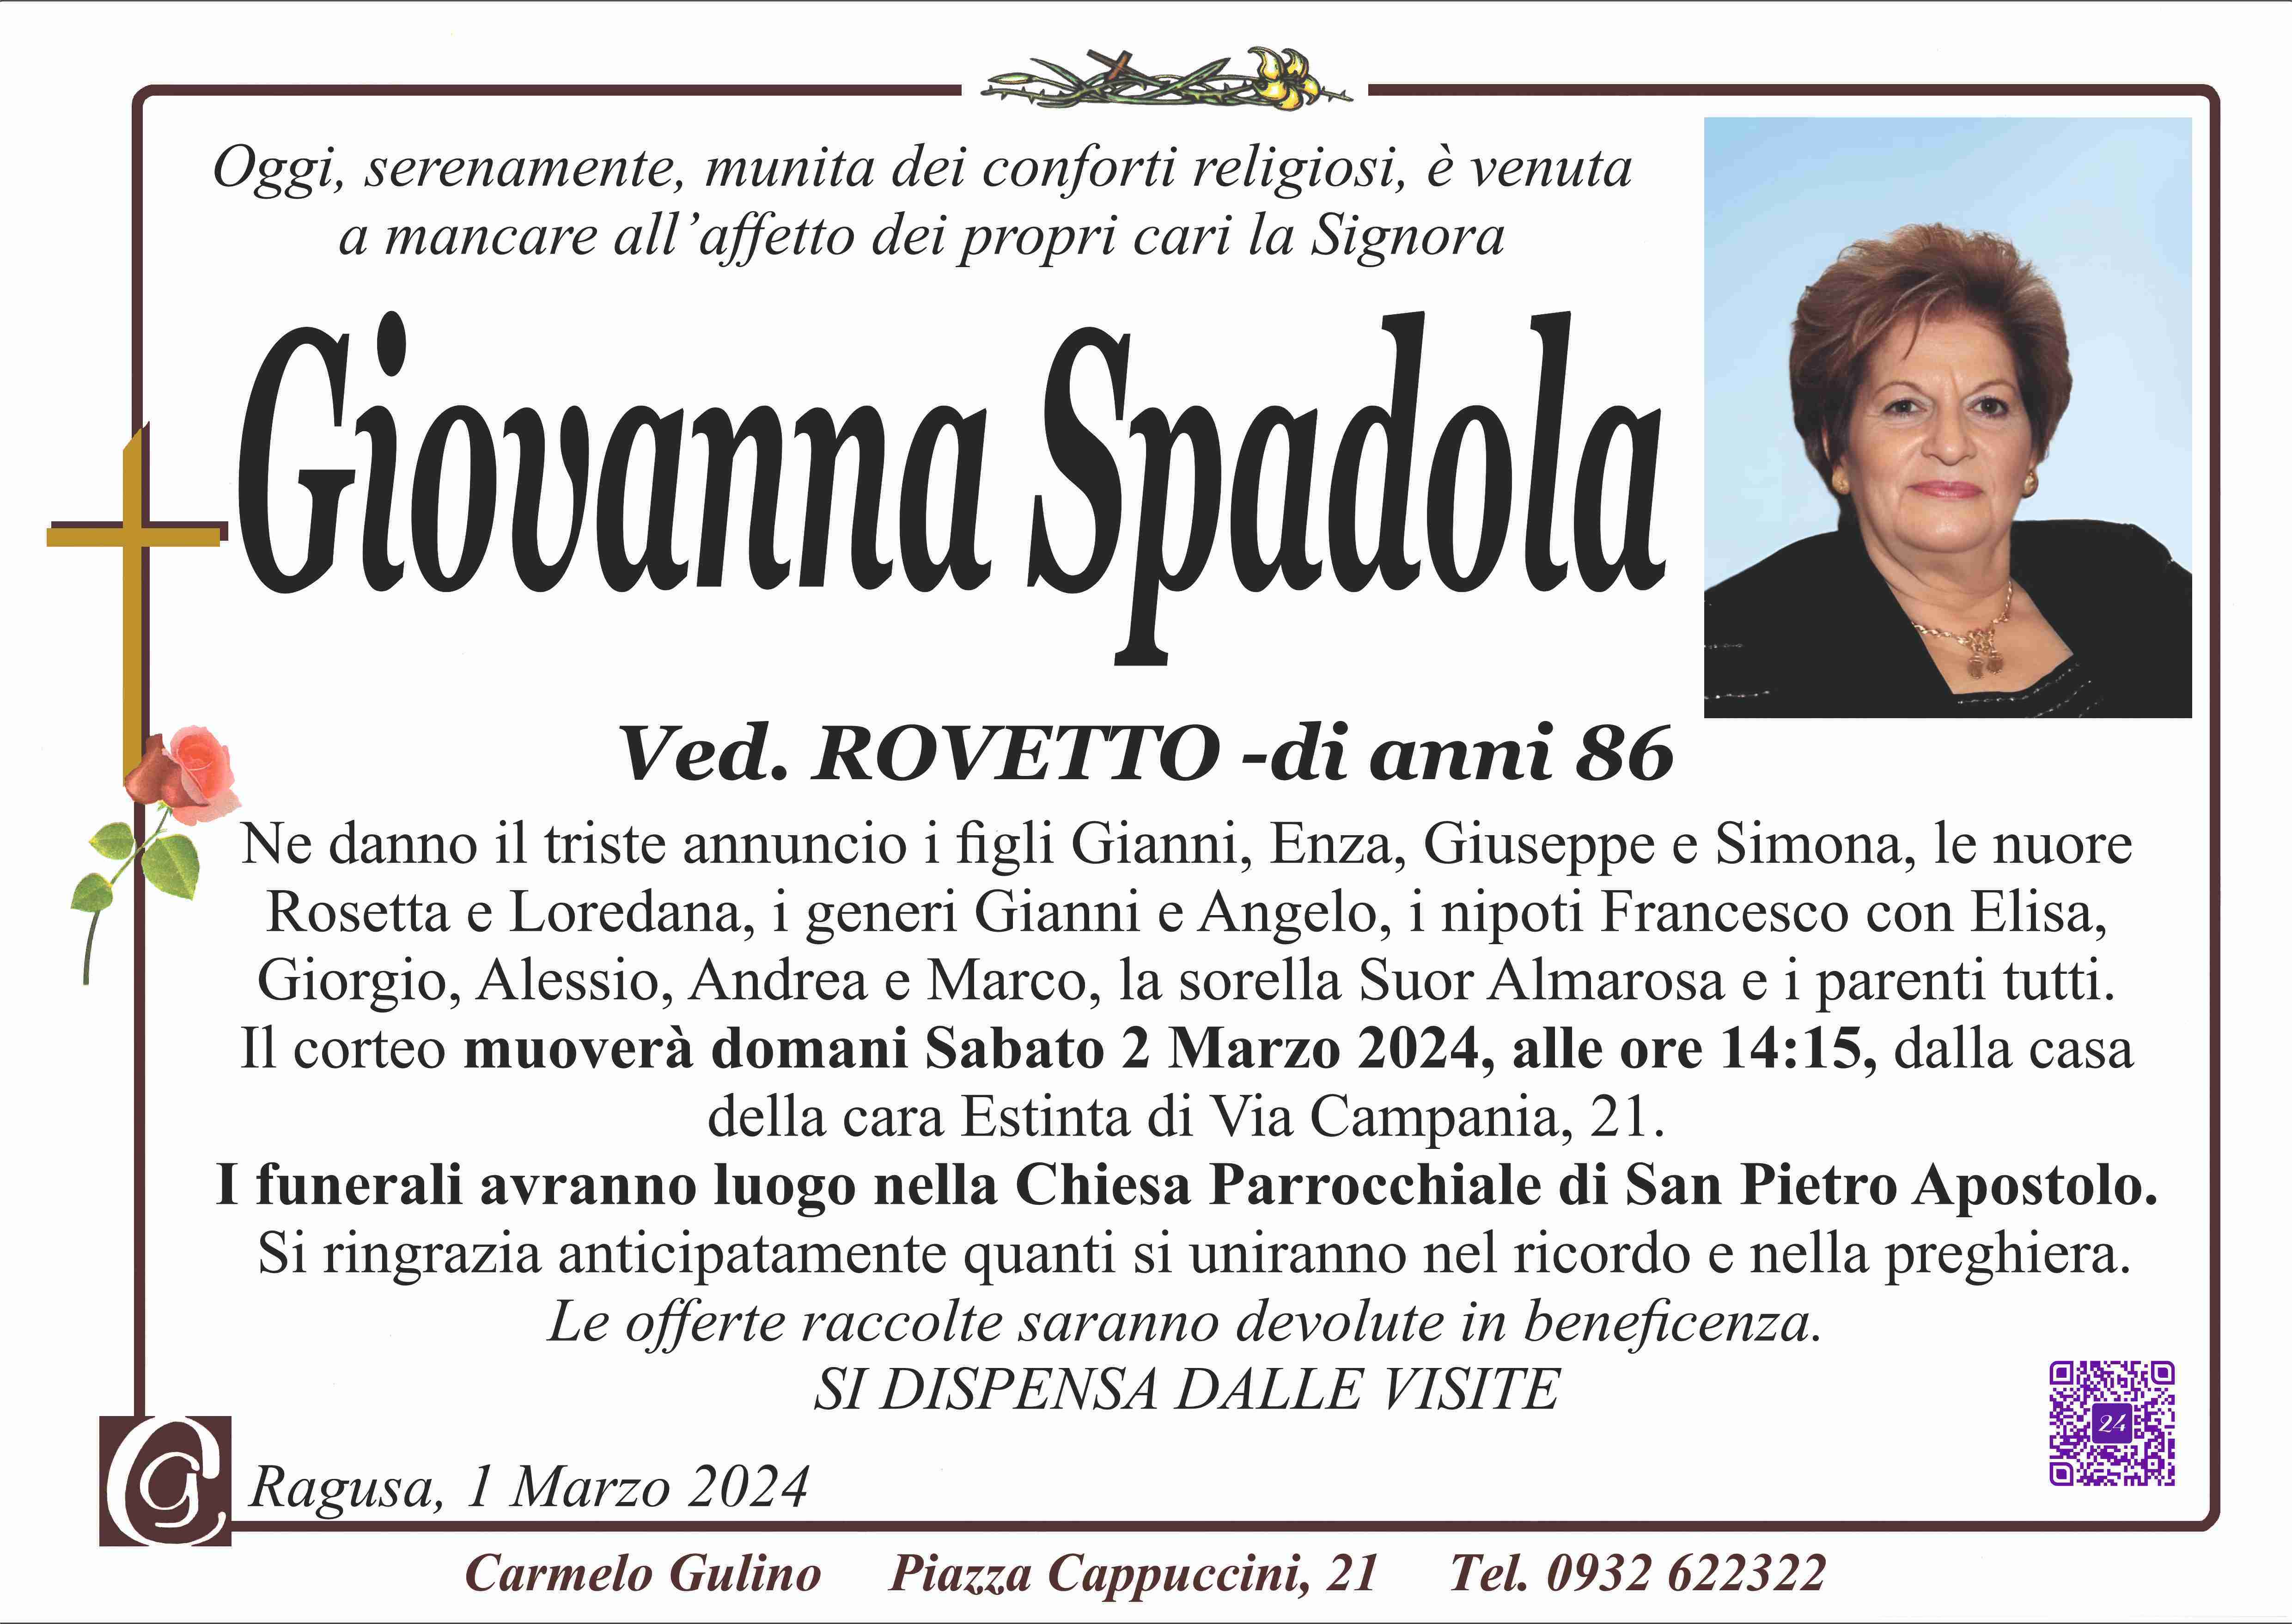 Giovanna Spadola